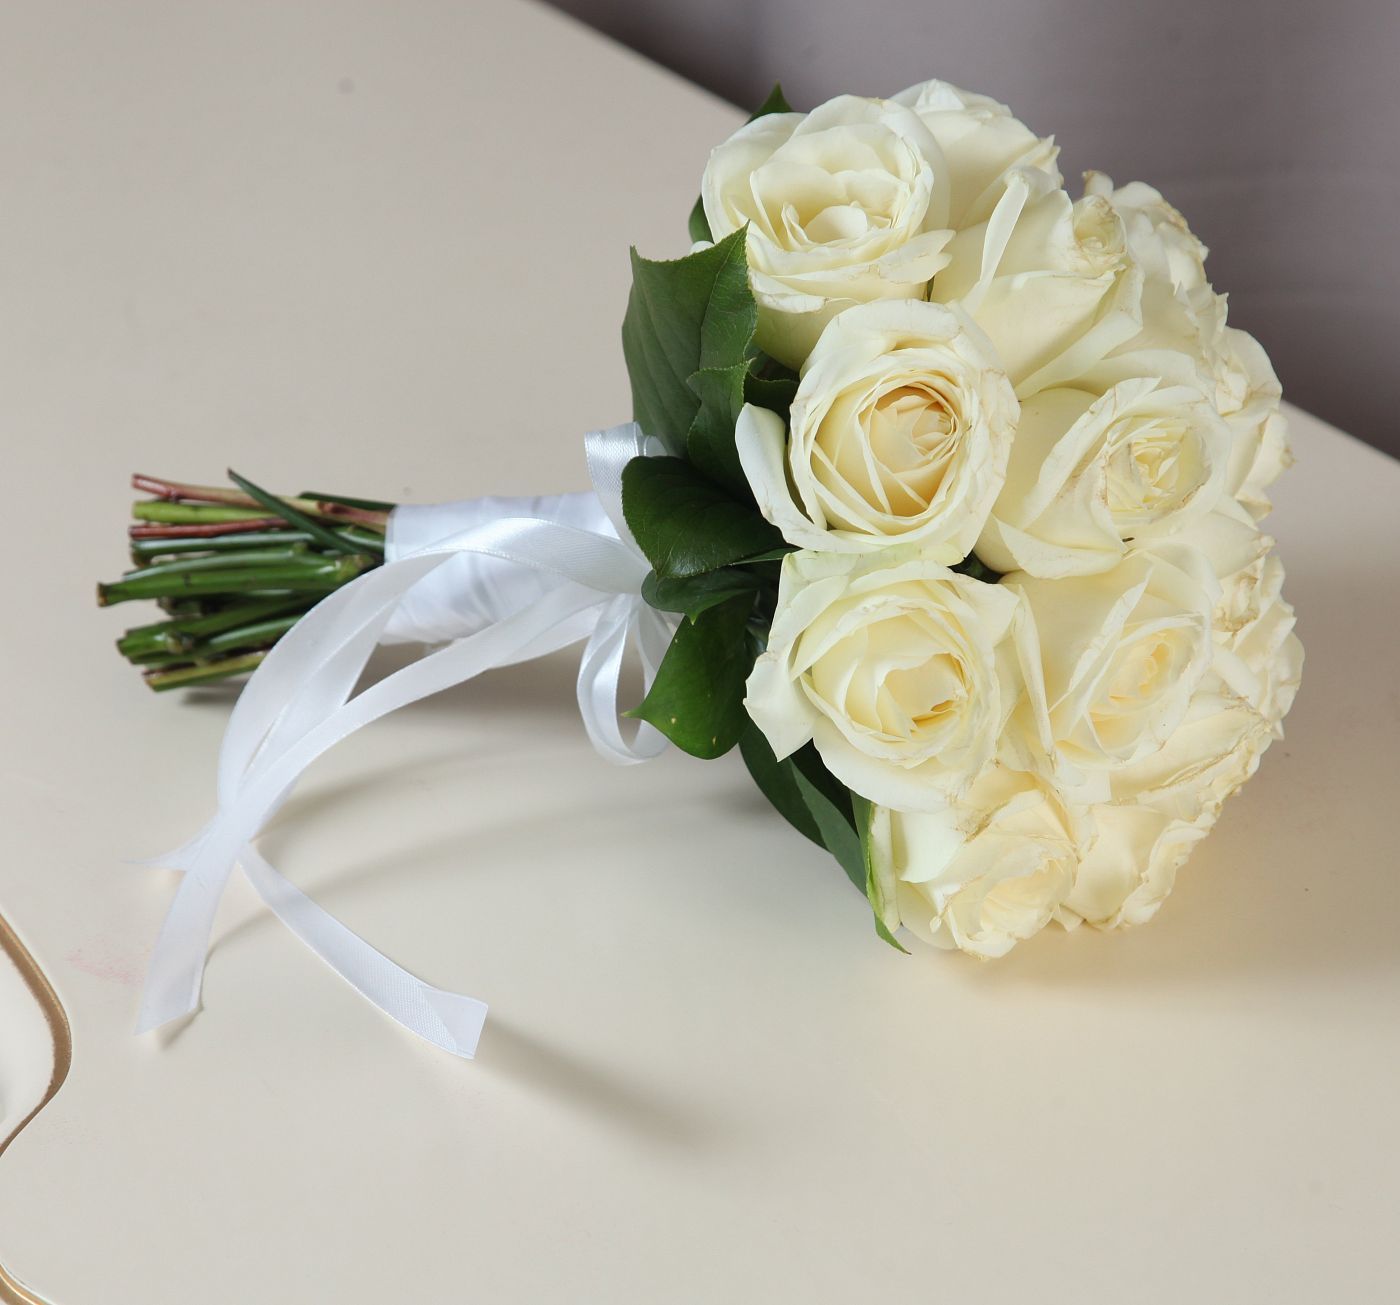 Что означает букет невесты из белых роз?